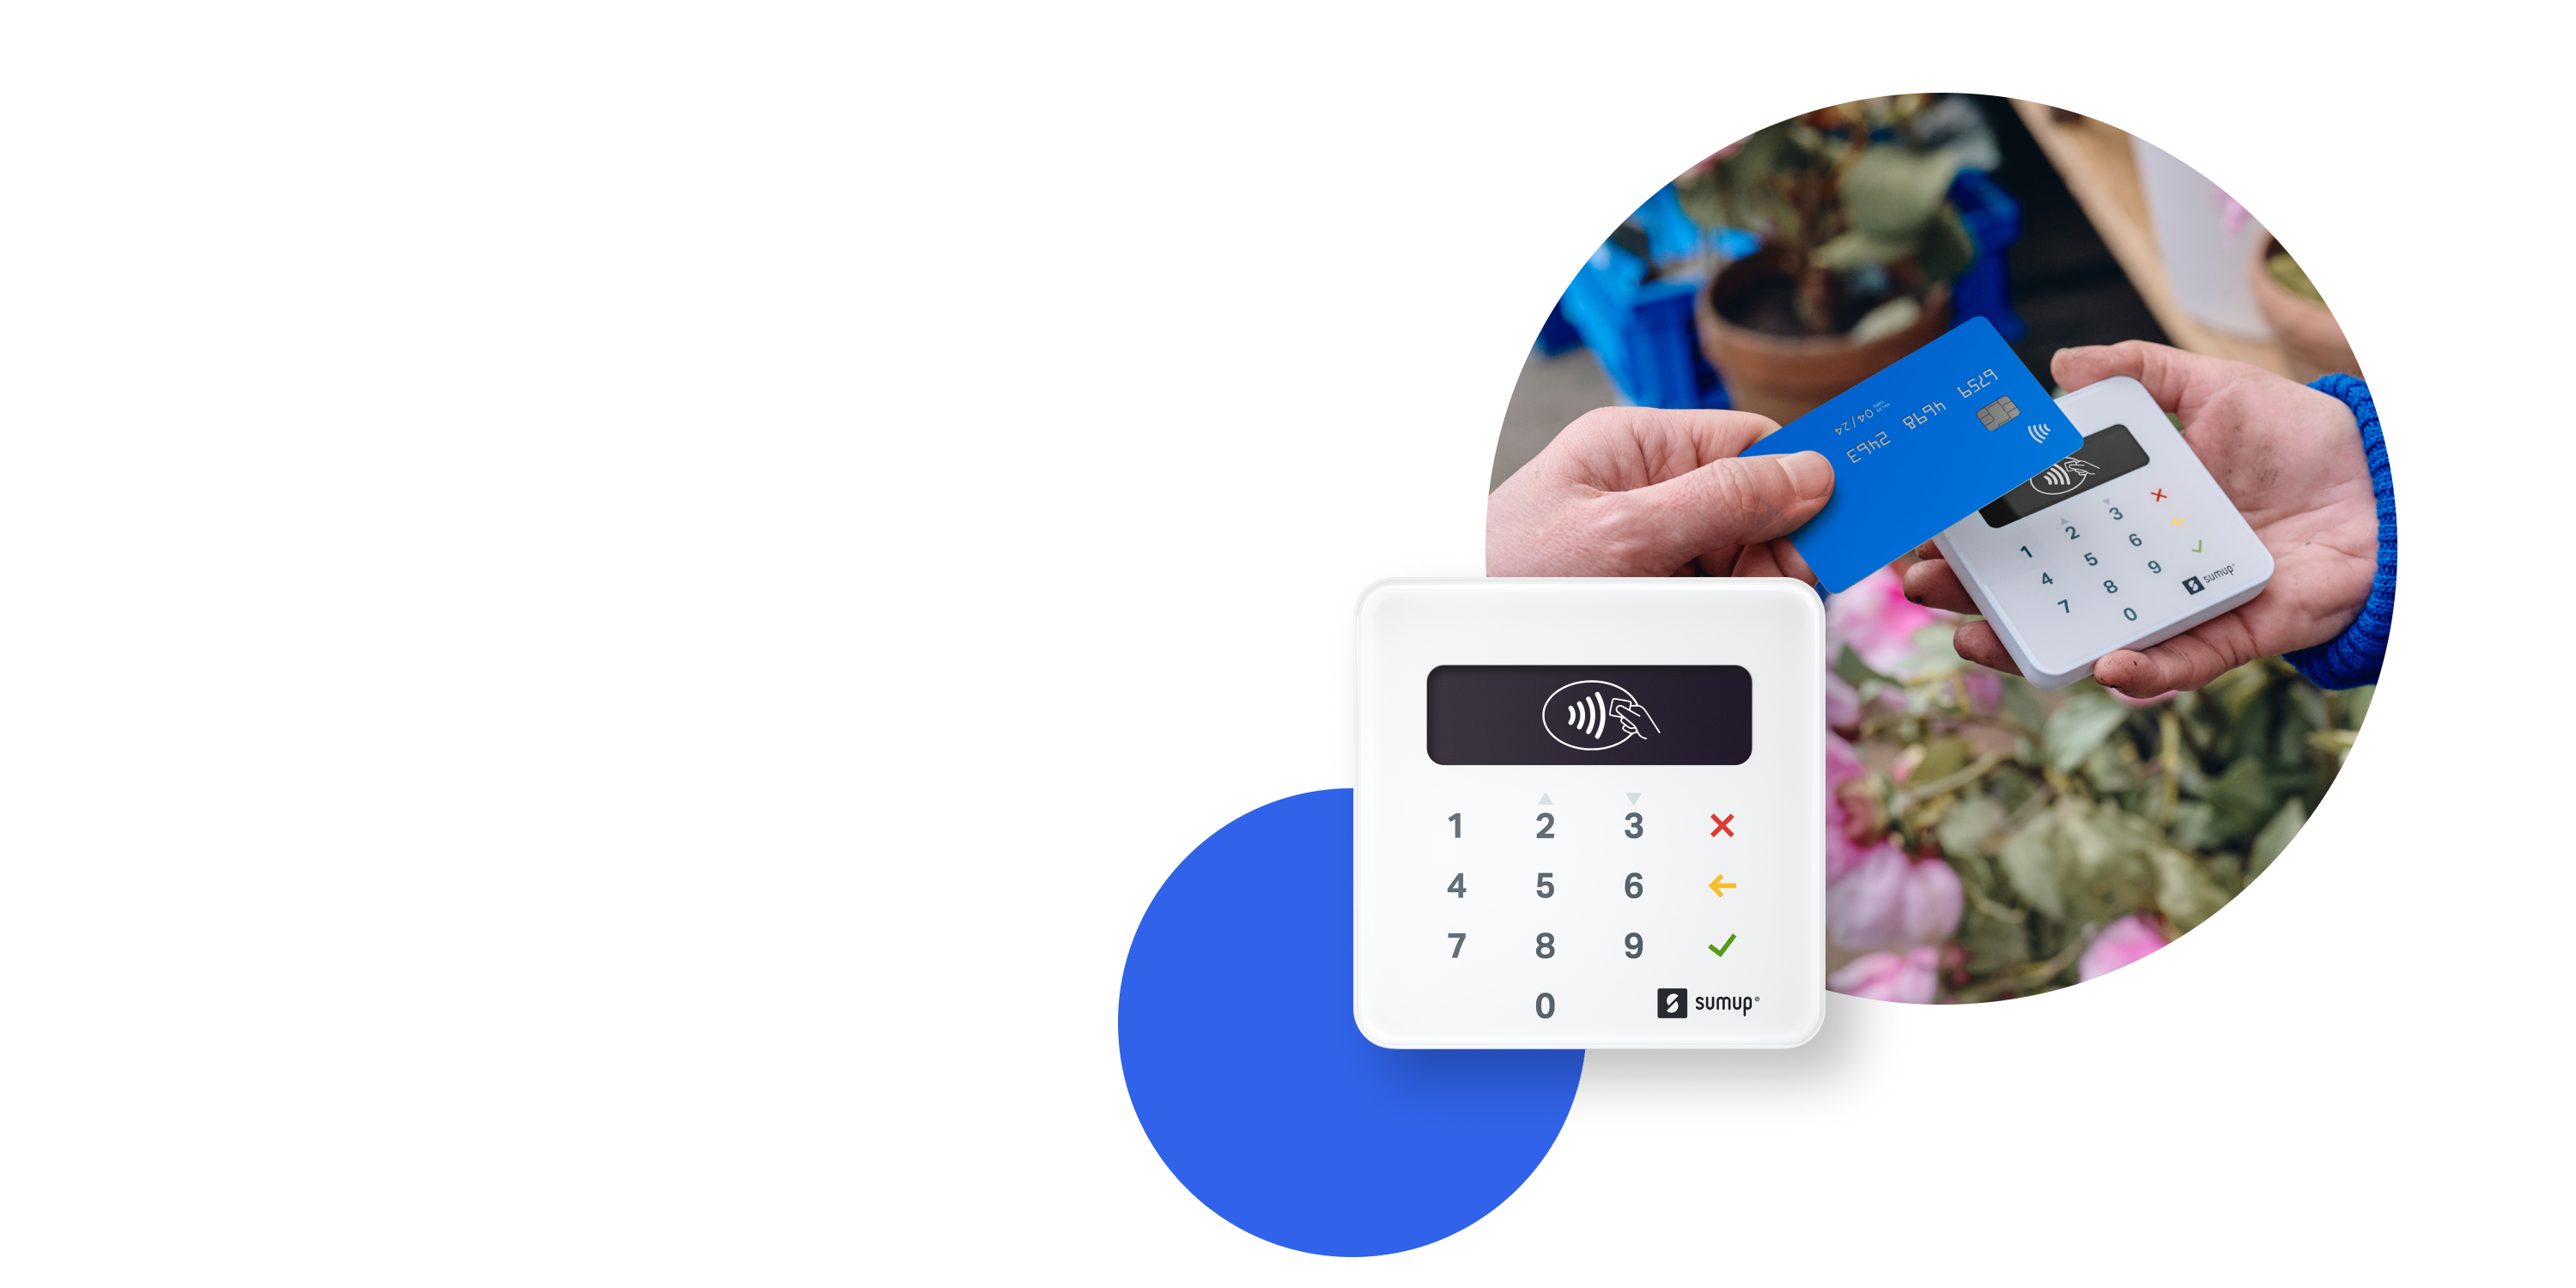 Lettore mobile POS NFC per accettare pagamenti contactless